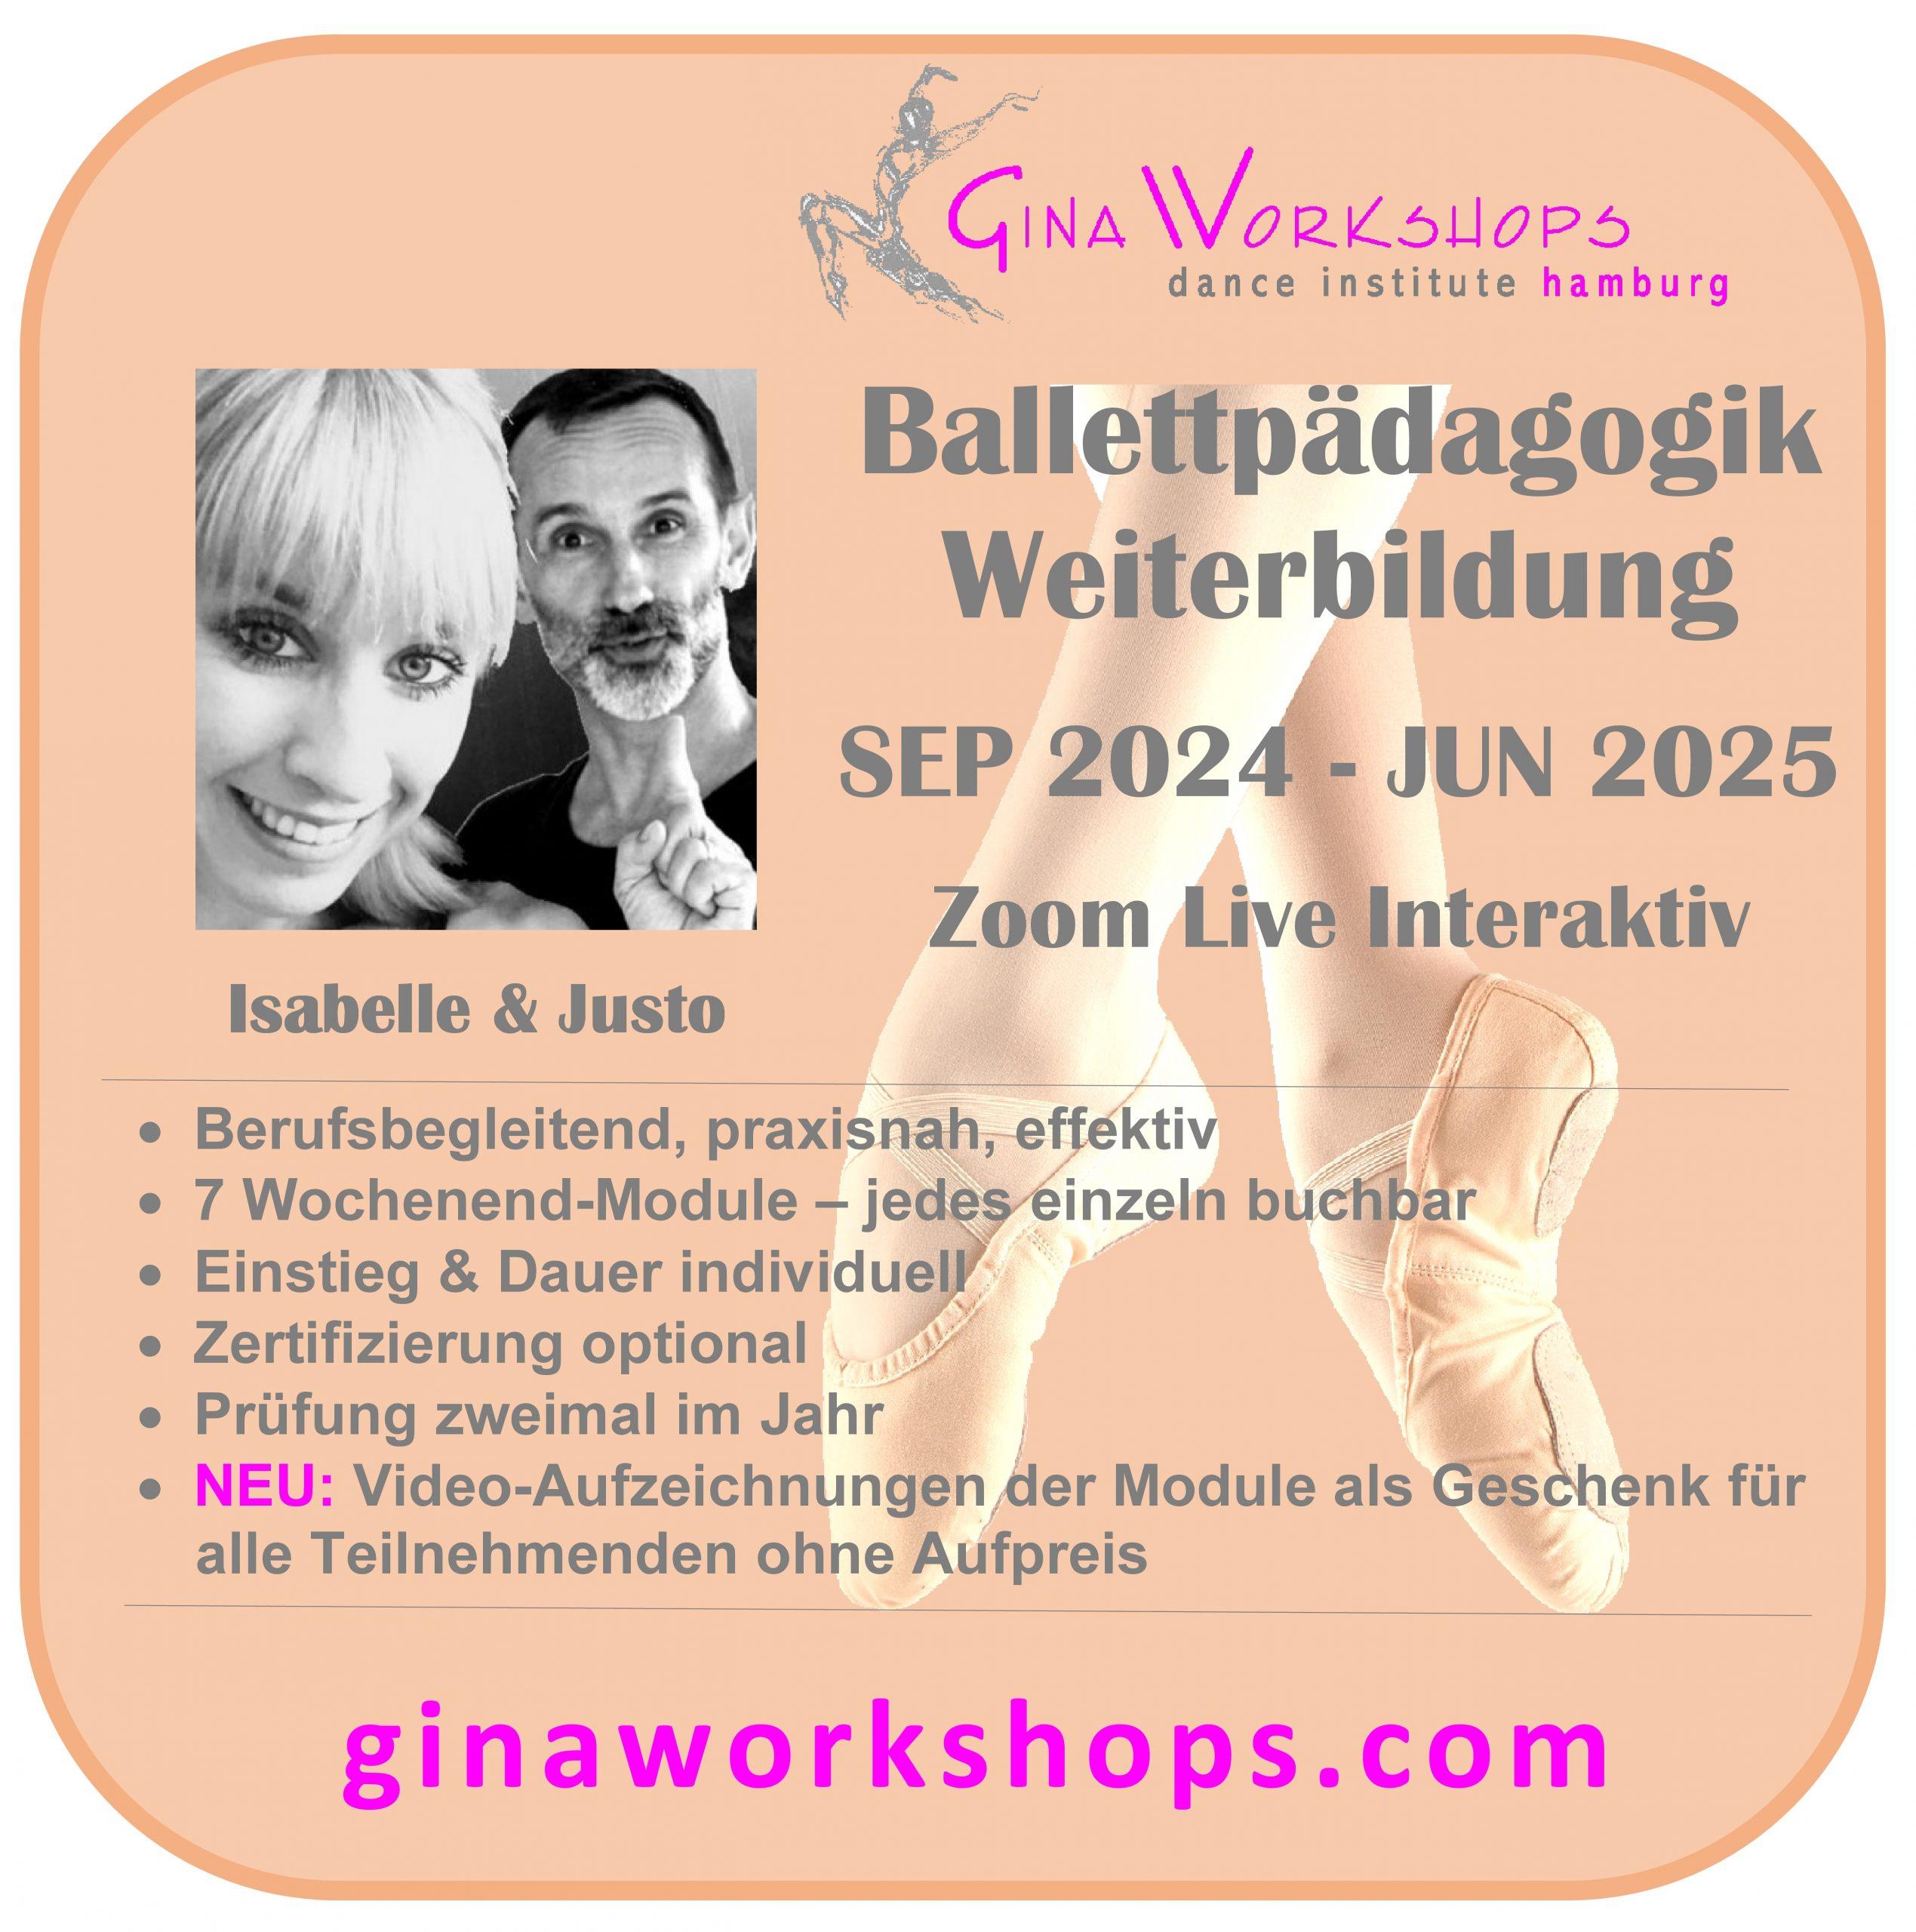 Weiterbildung Ballettpädagogik für 6-18 J. nach Waganowa